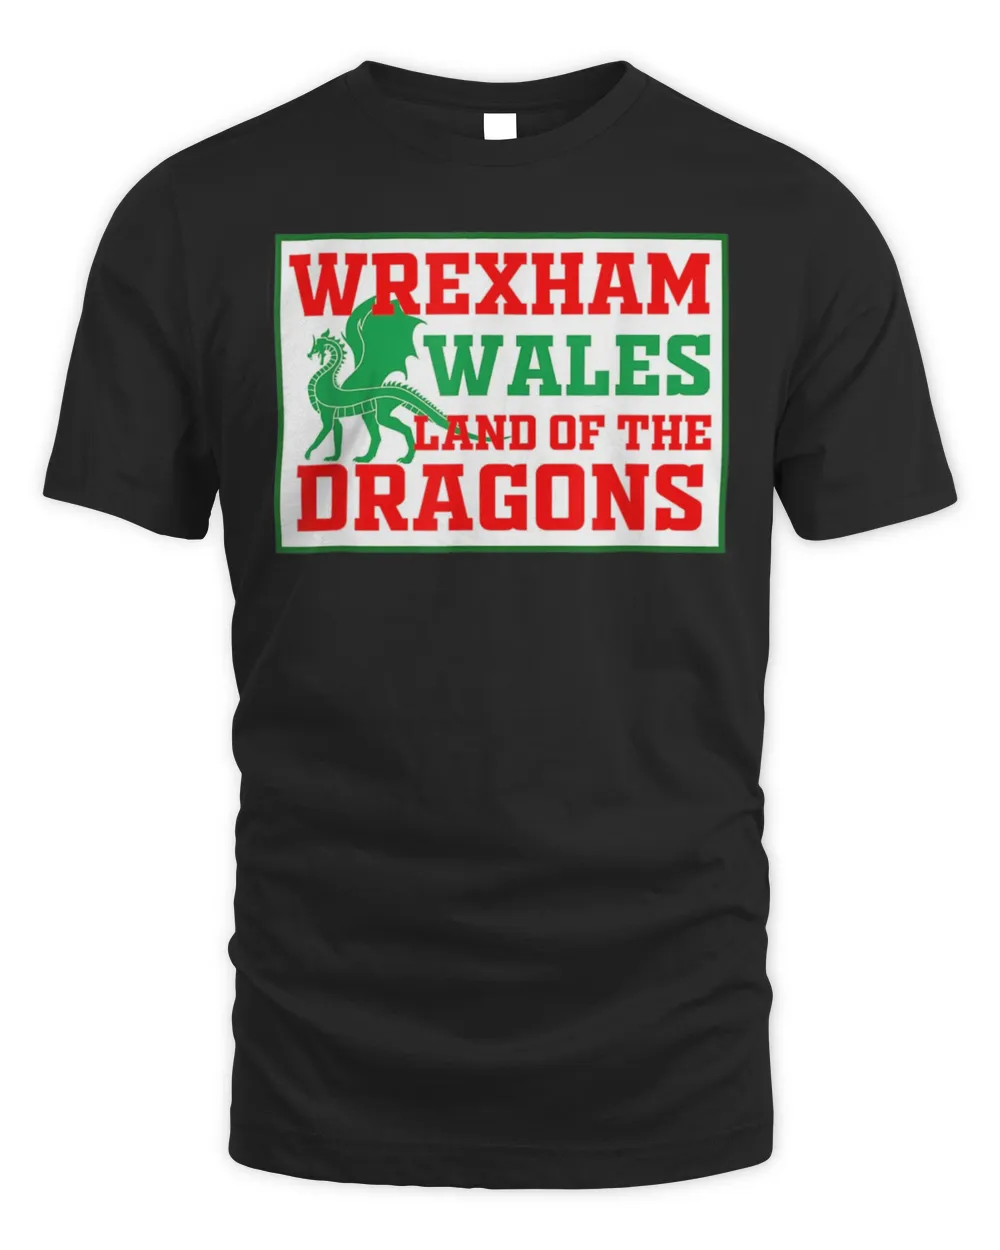 Wrexham Wales football soccer dragon Welsh Shirt